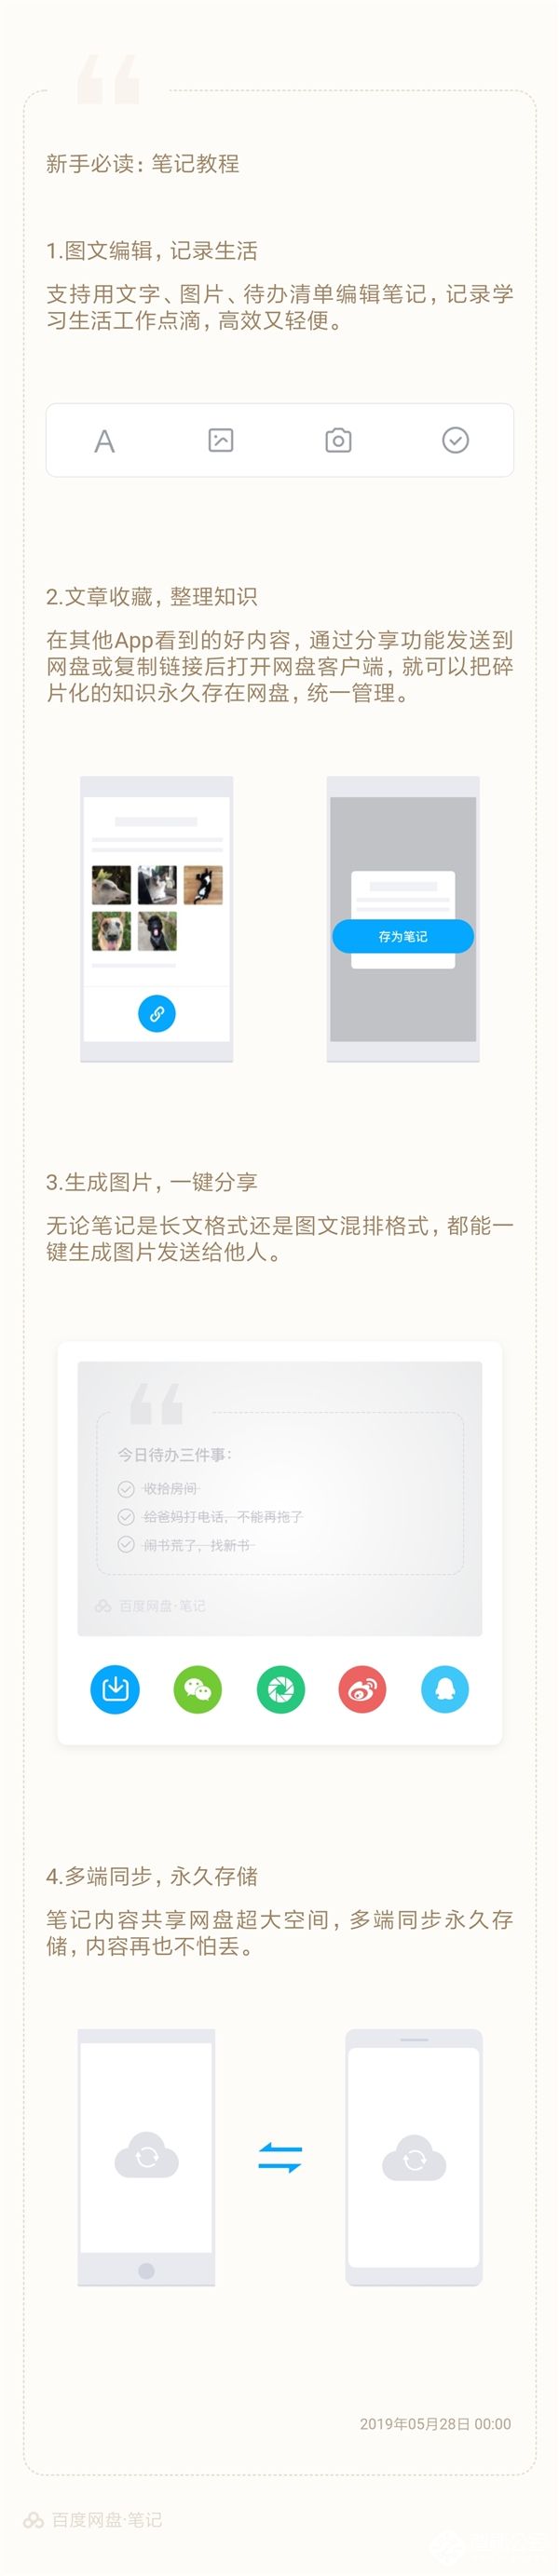 百度网盘10.0.11 Beta 版正式上线；昔日中国洗衣机大王威力落寞 智能公会